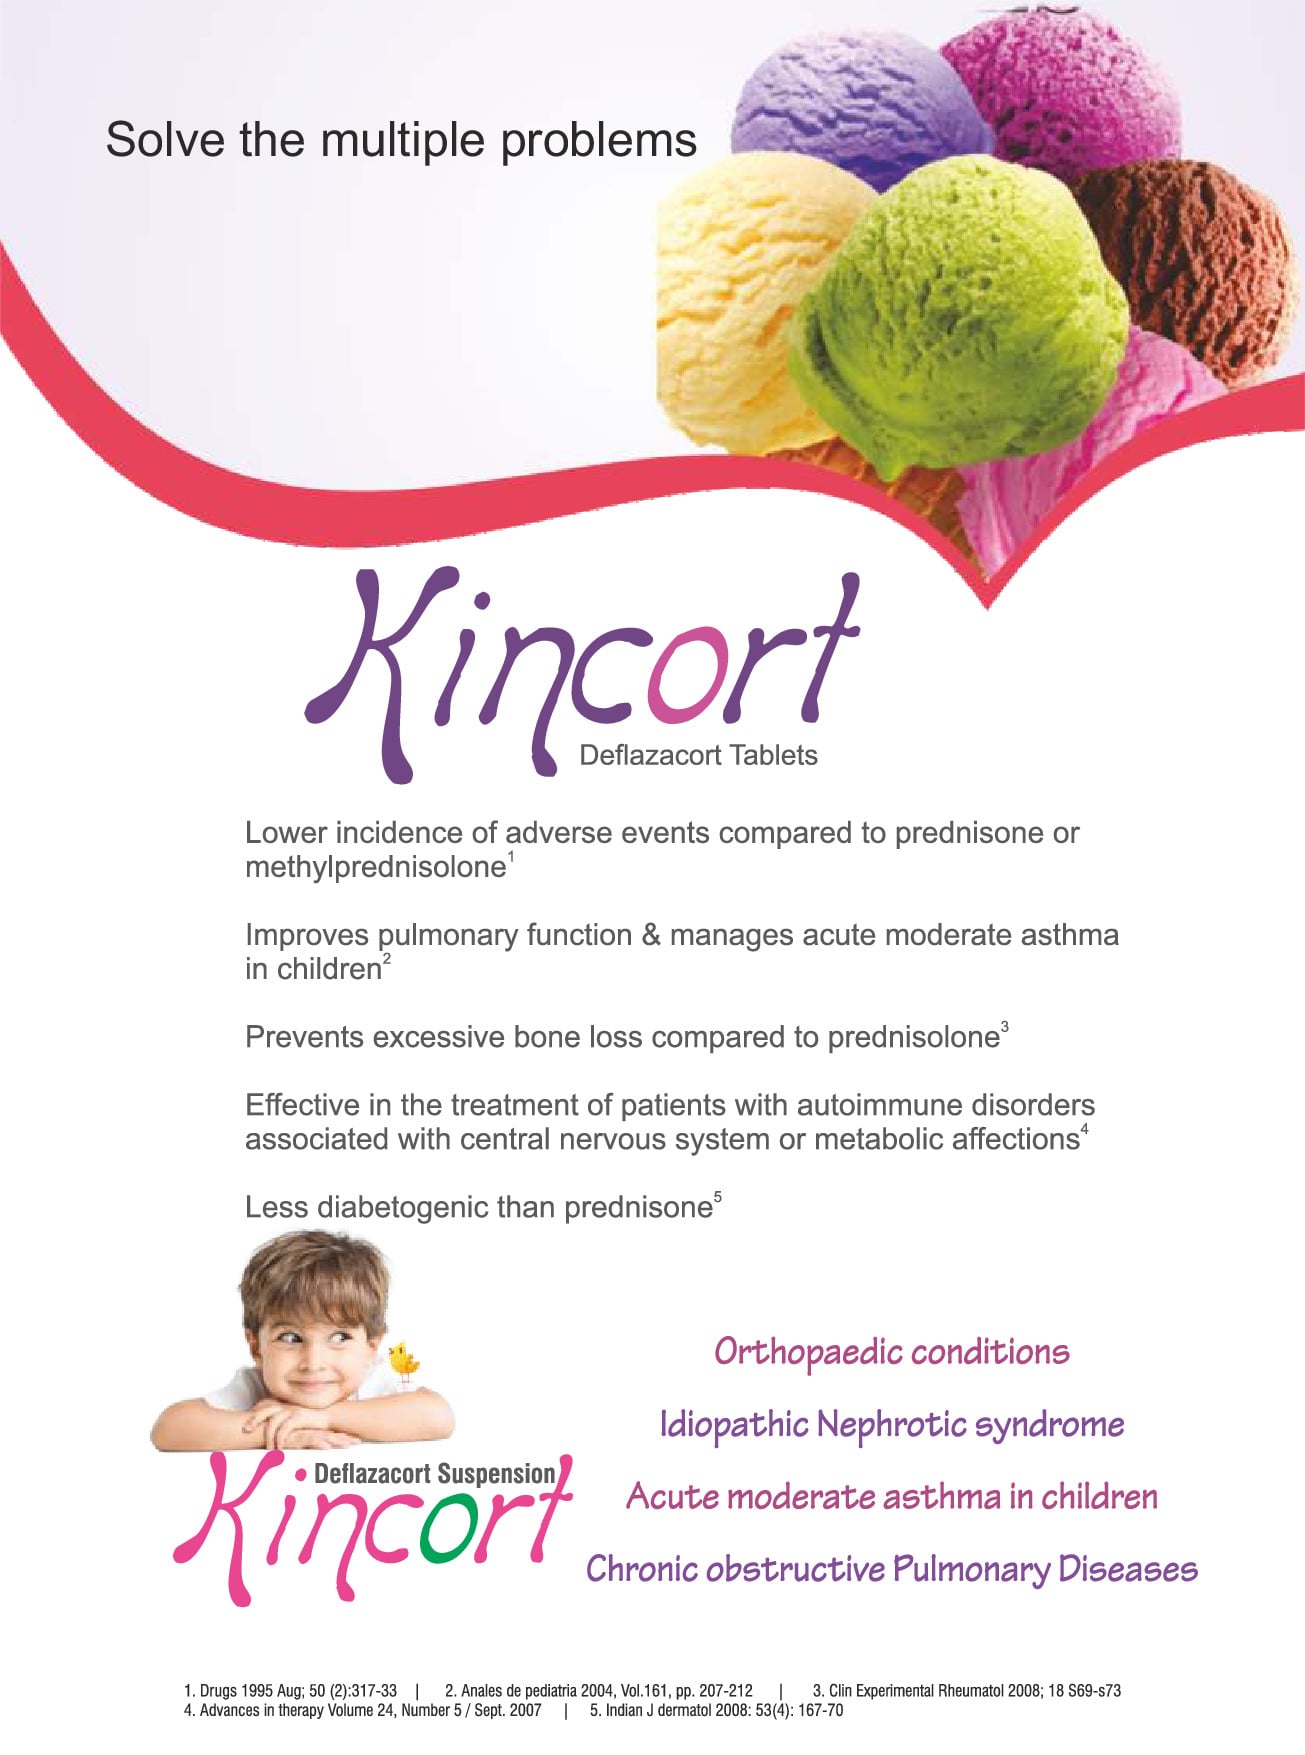 kincort 6